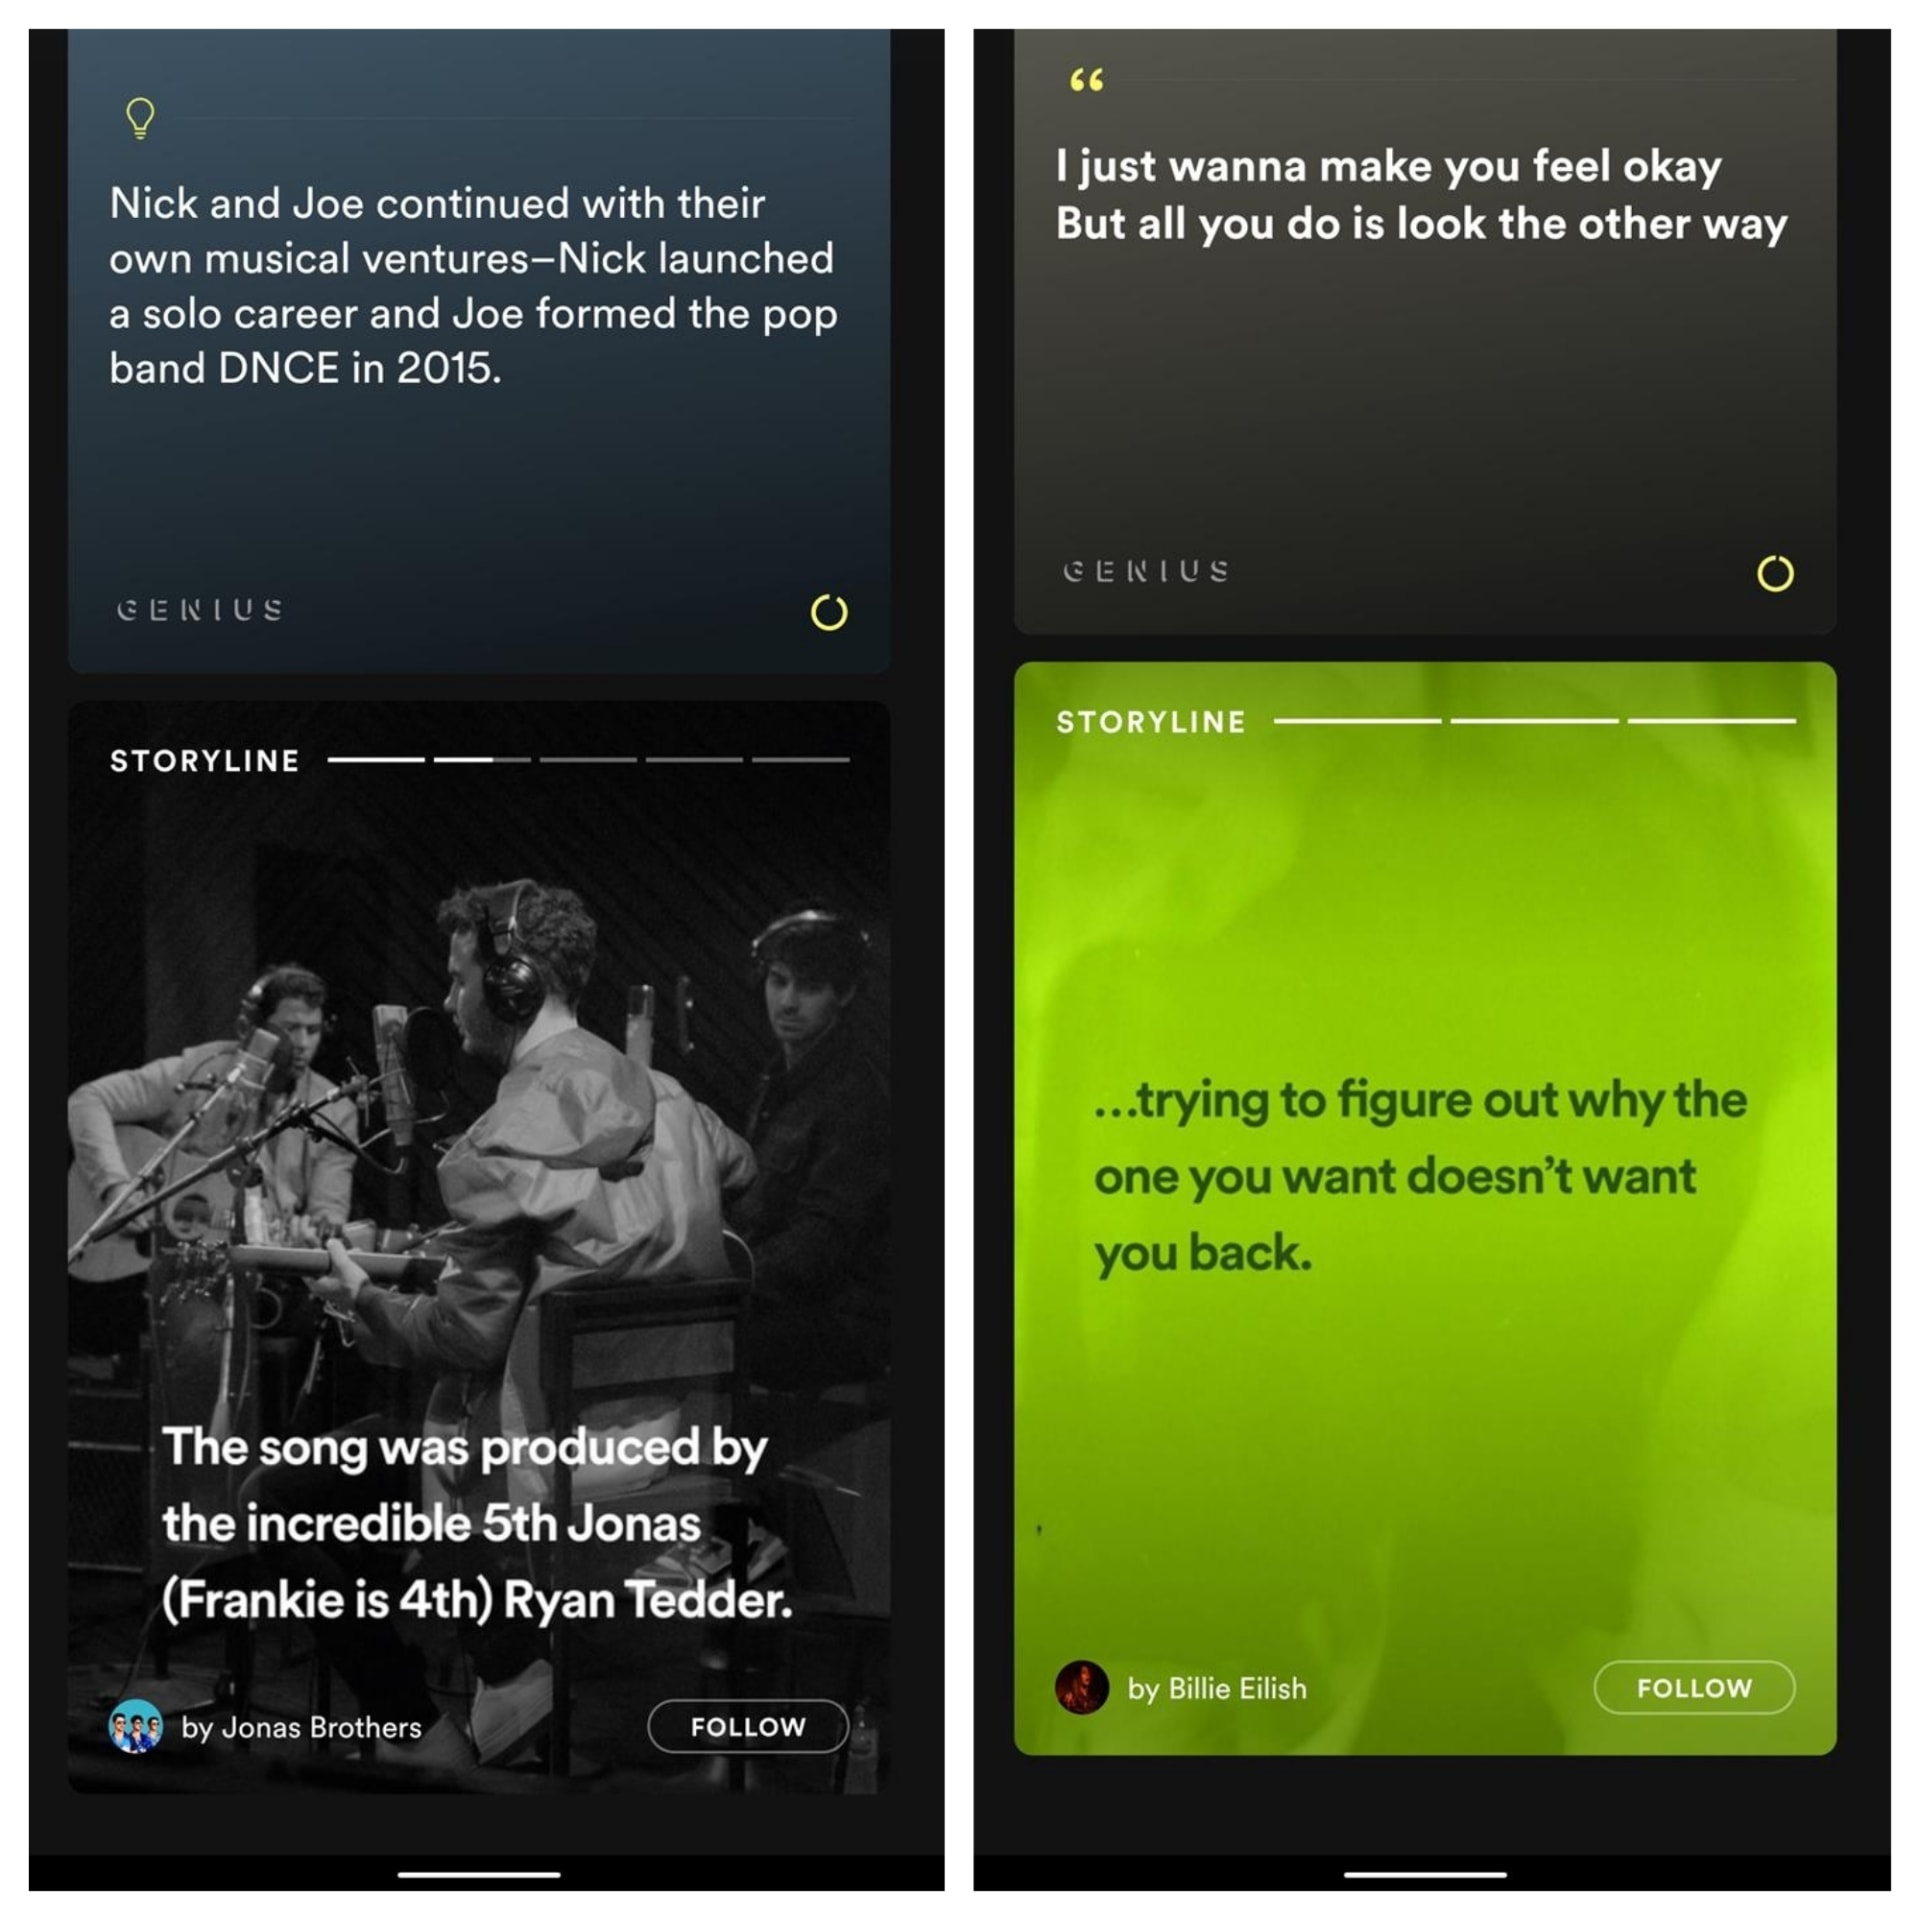 Náhled funkce Storyline ve Spotify